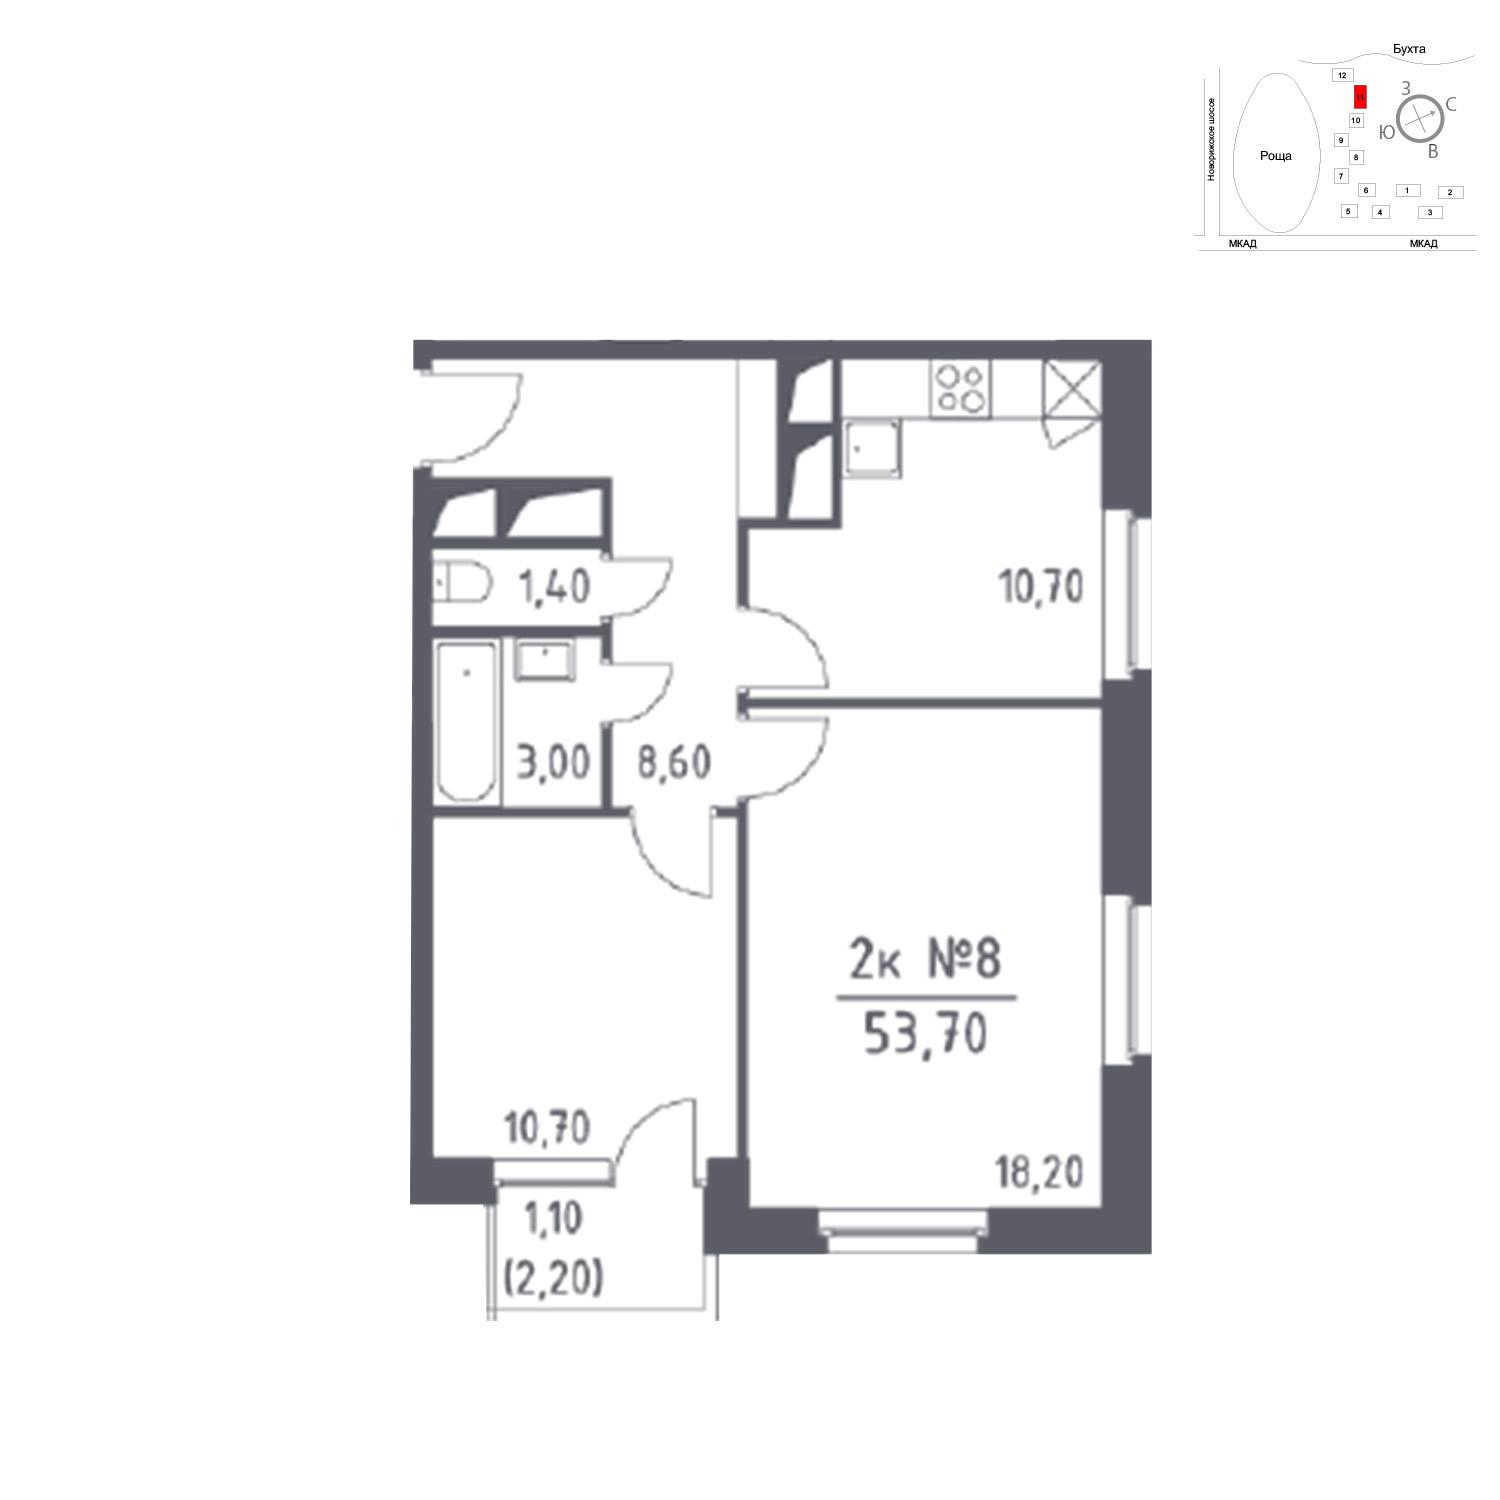 Продаётся 2-комнатная квартира в новостройке 53.7 кв.м. этаж 26/33 за 0 руб 